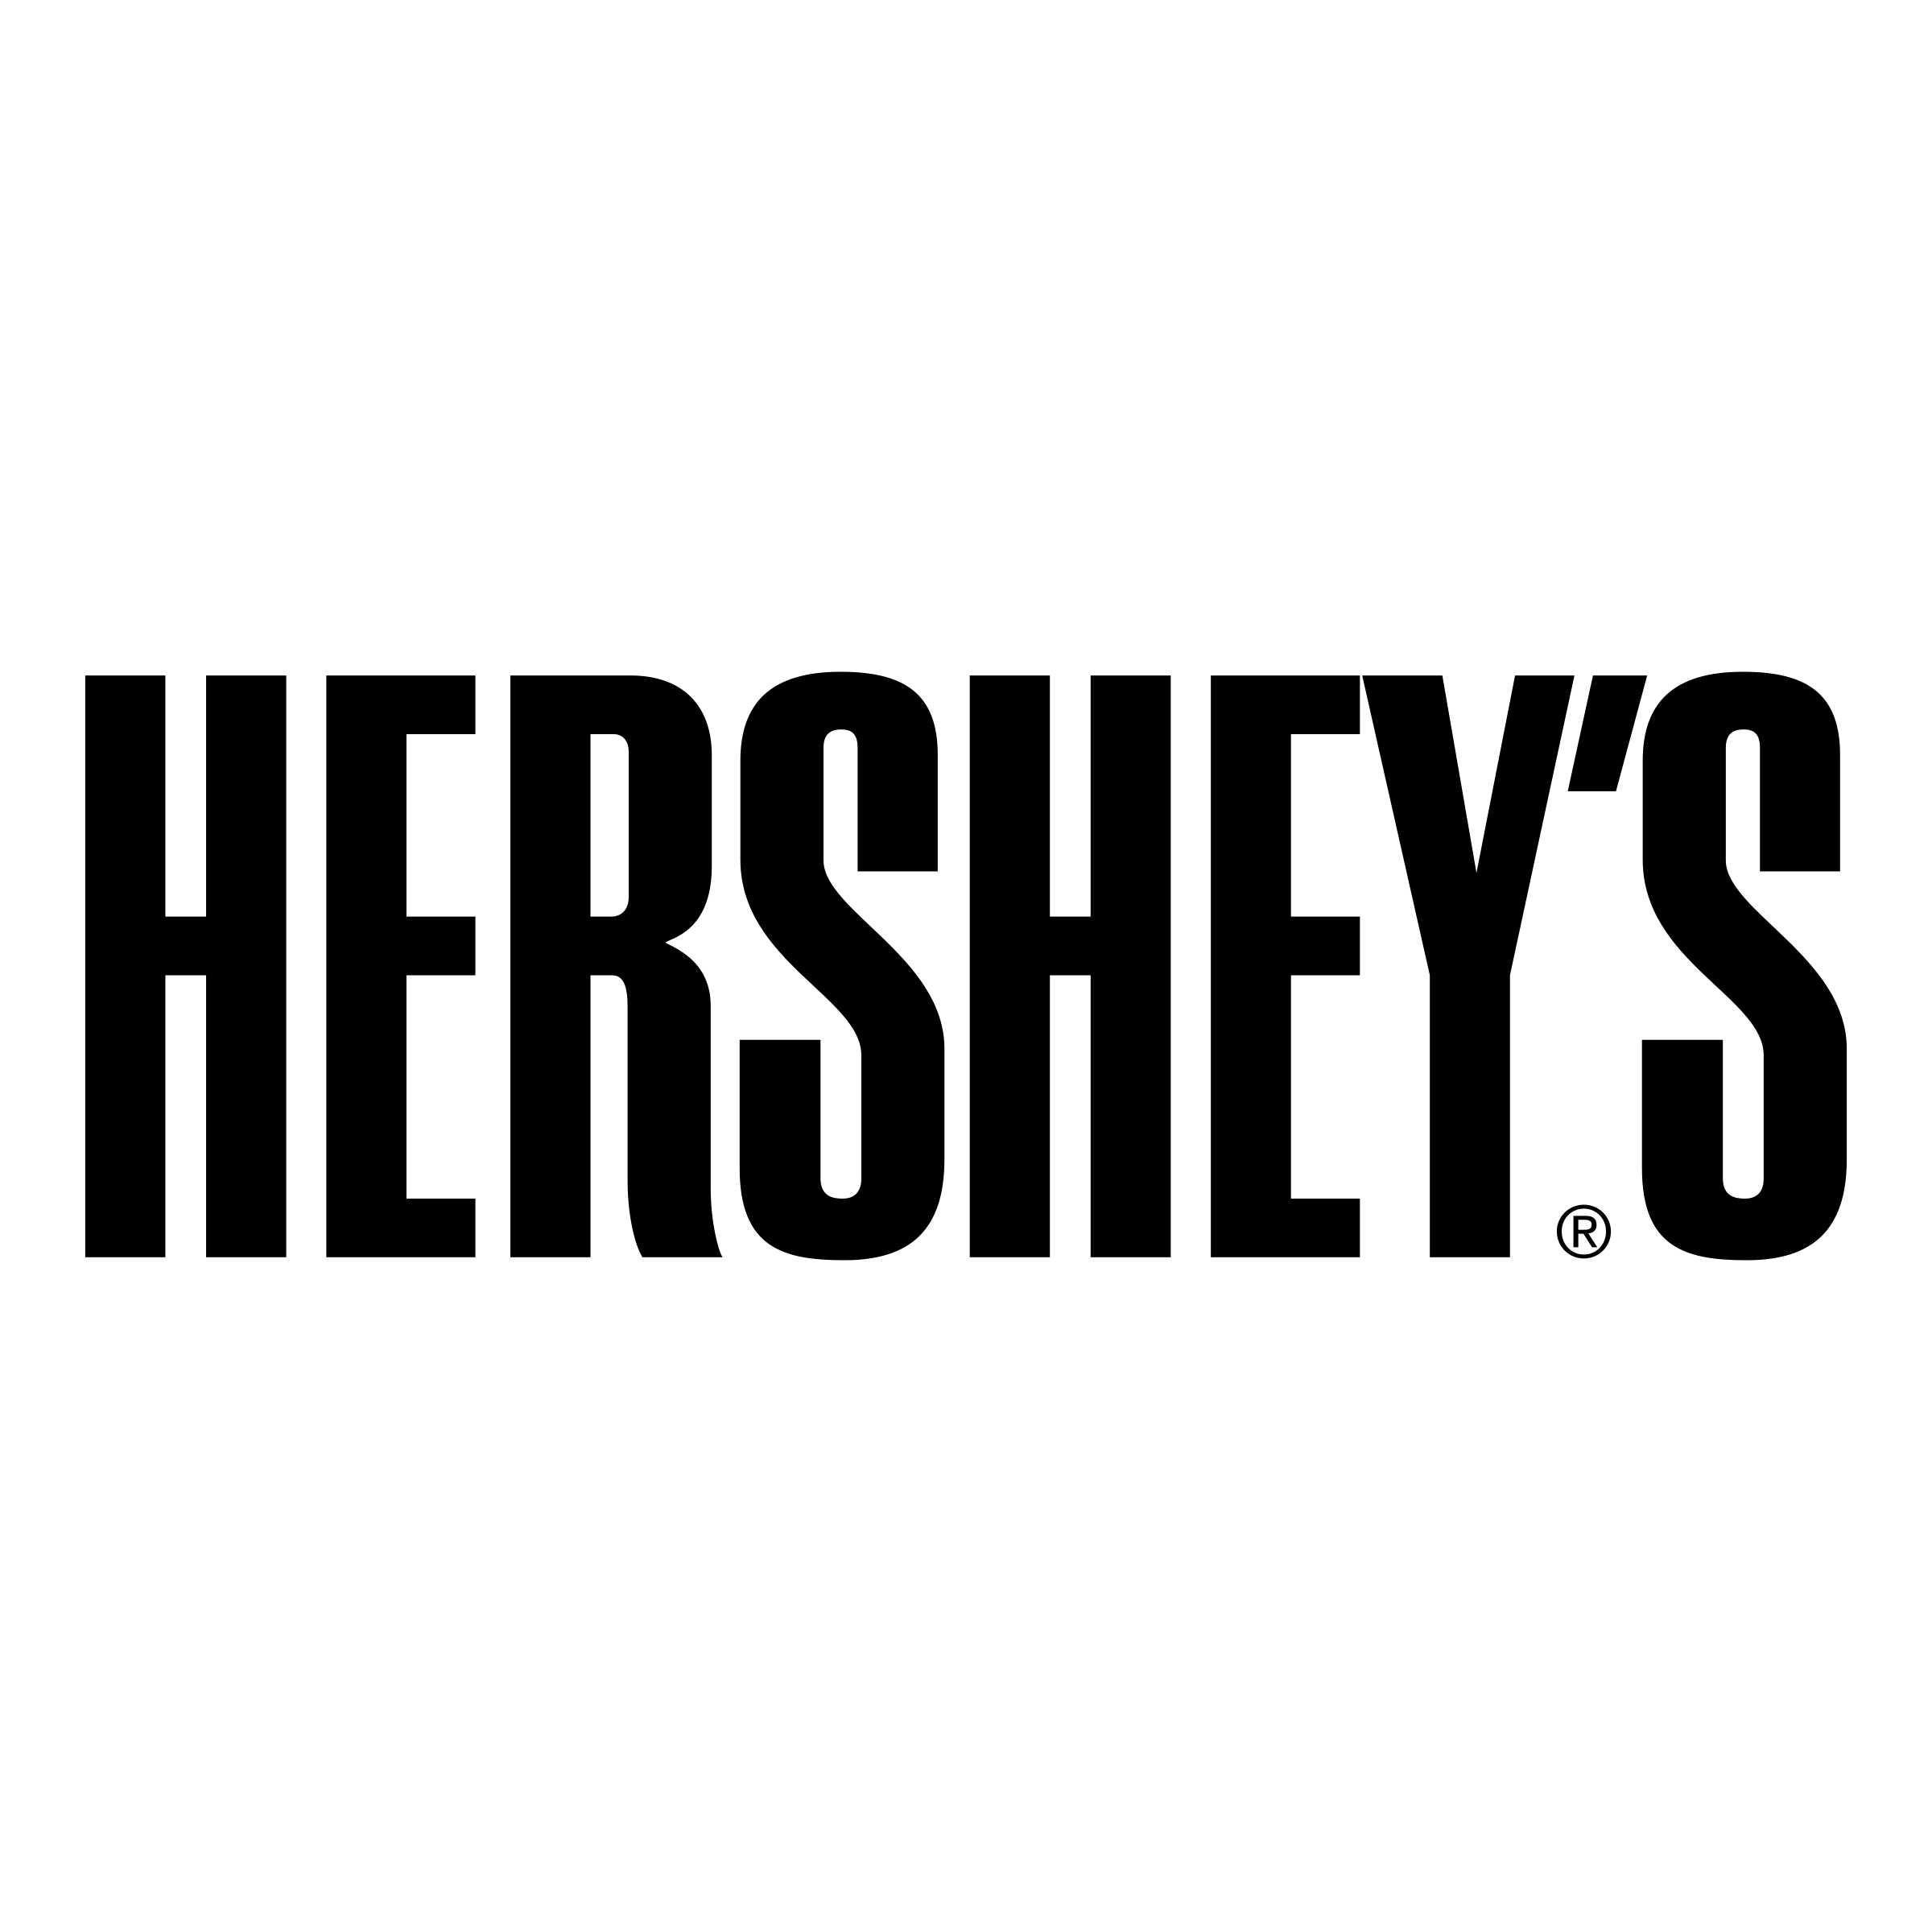 Hersy Logo - Hershey's Logo PNG Transparent & SVG Vector